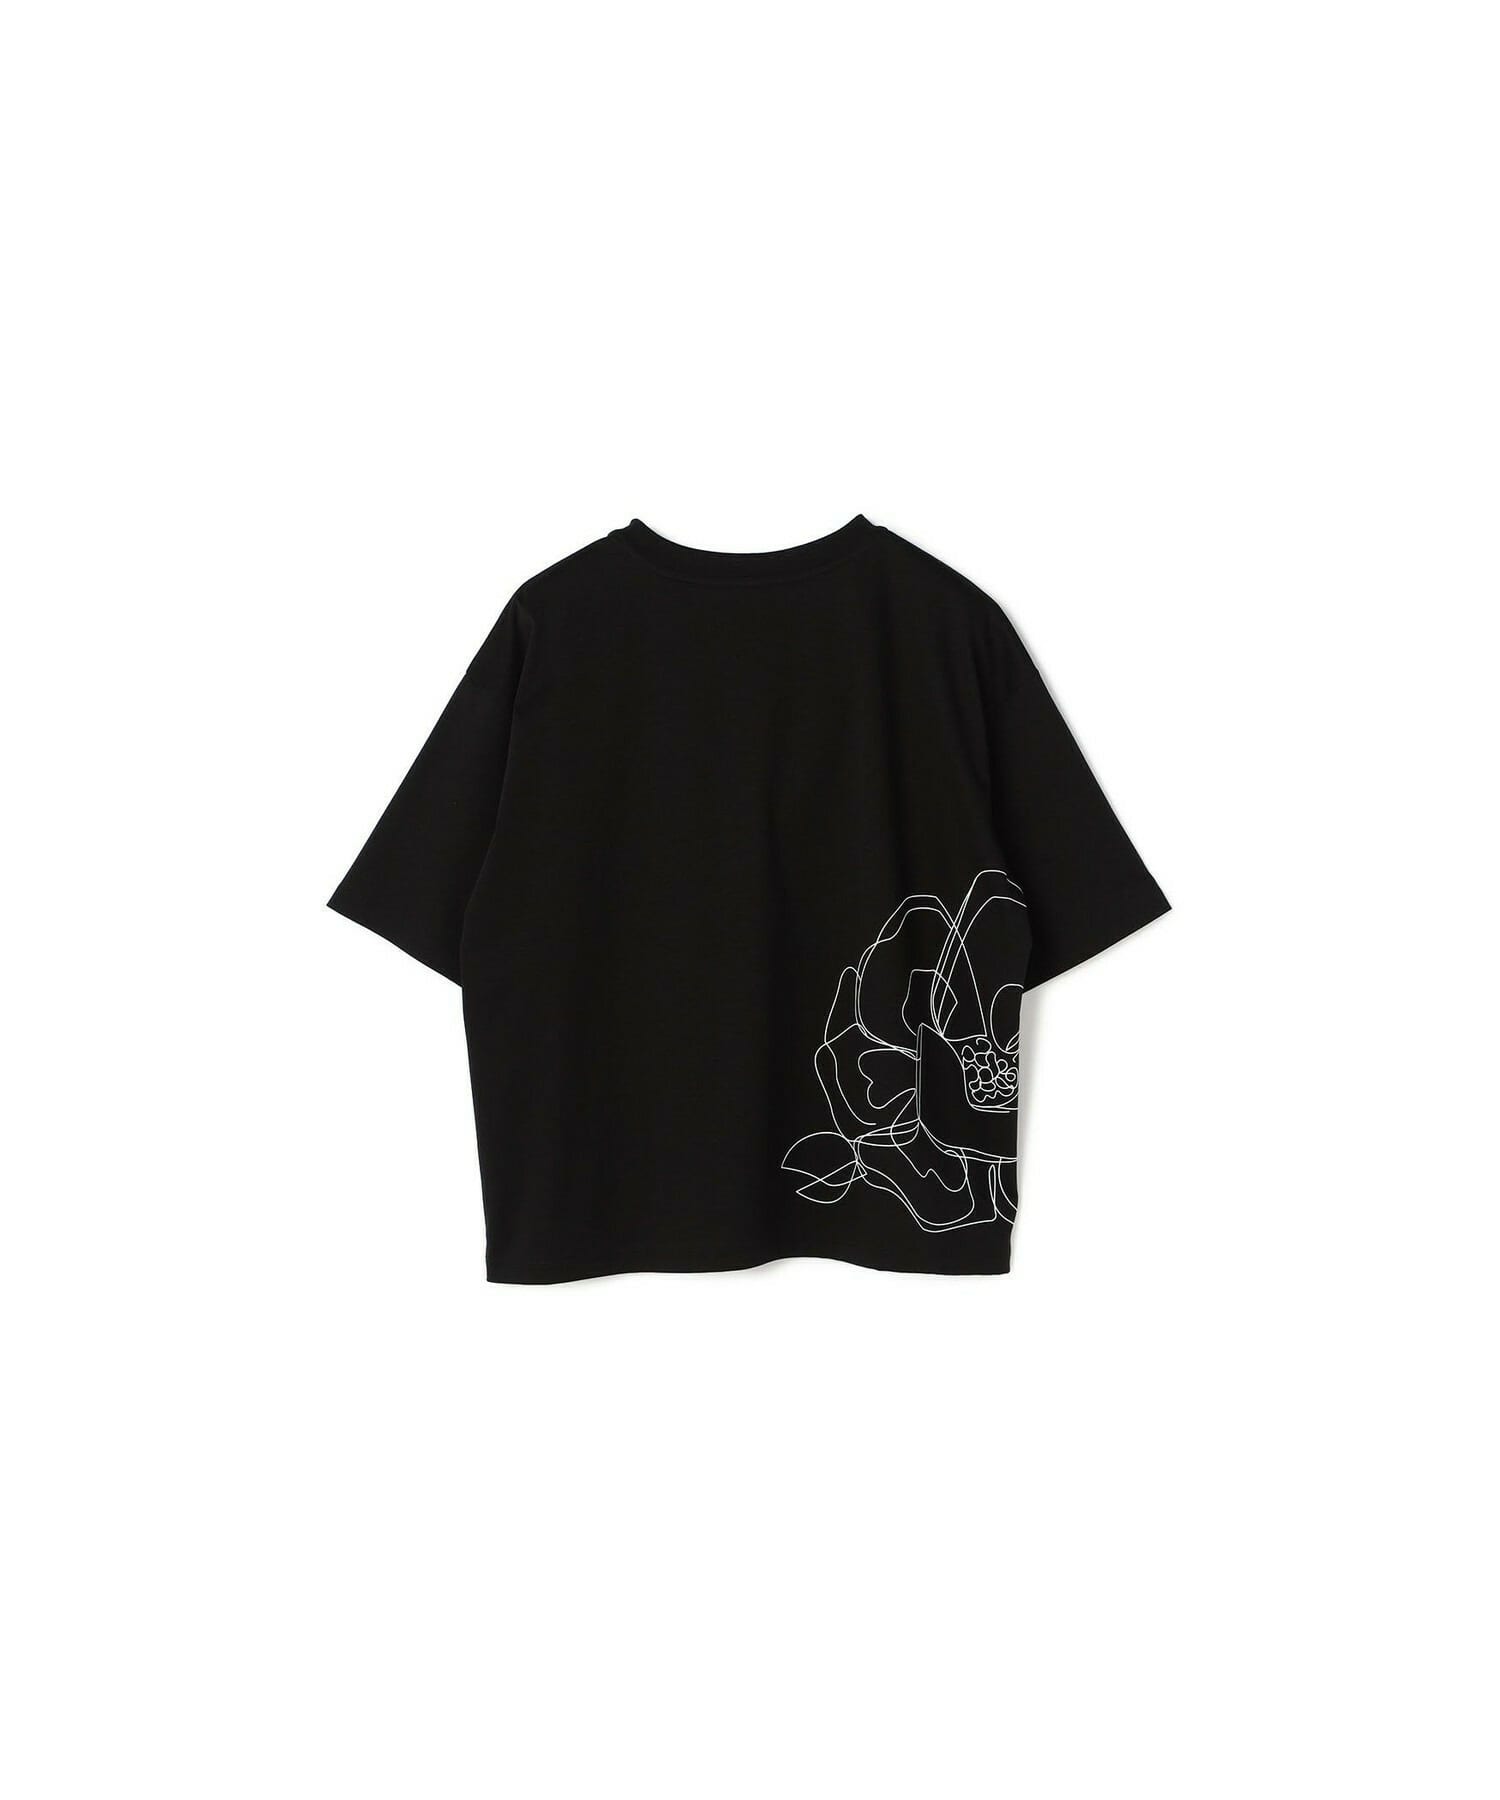 【yoshie inaba】コットンライトスムースTシャツ 詳細画像 ブラック 1